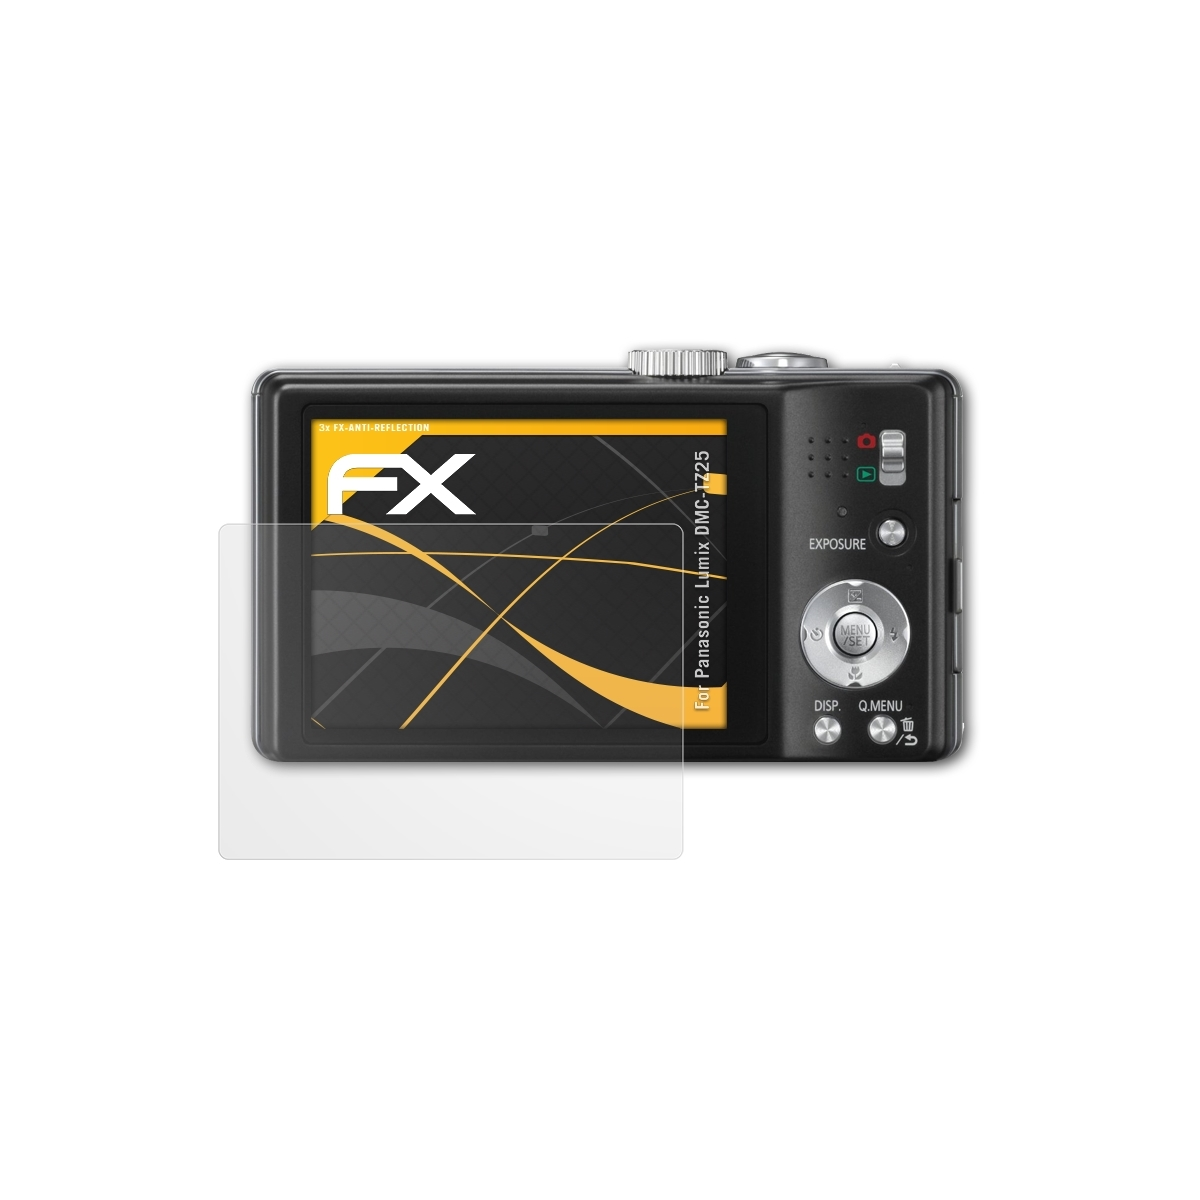 Panasonic Displayschutz(für 3x ATFOLIX Lumix FX-Antireflex DMC-TZ25)